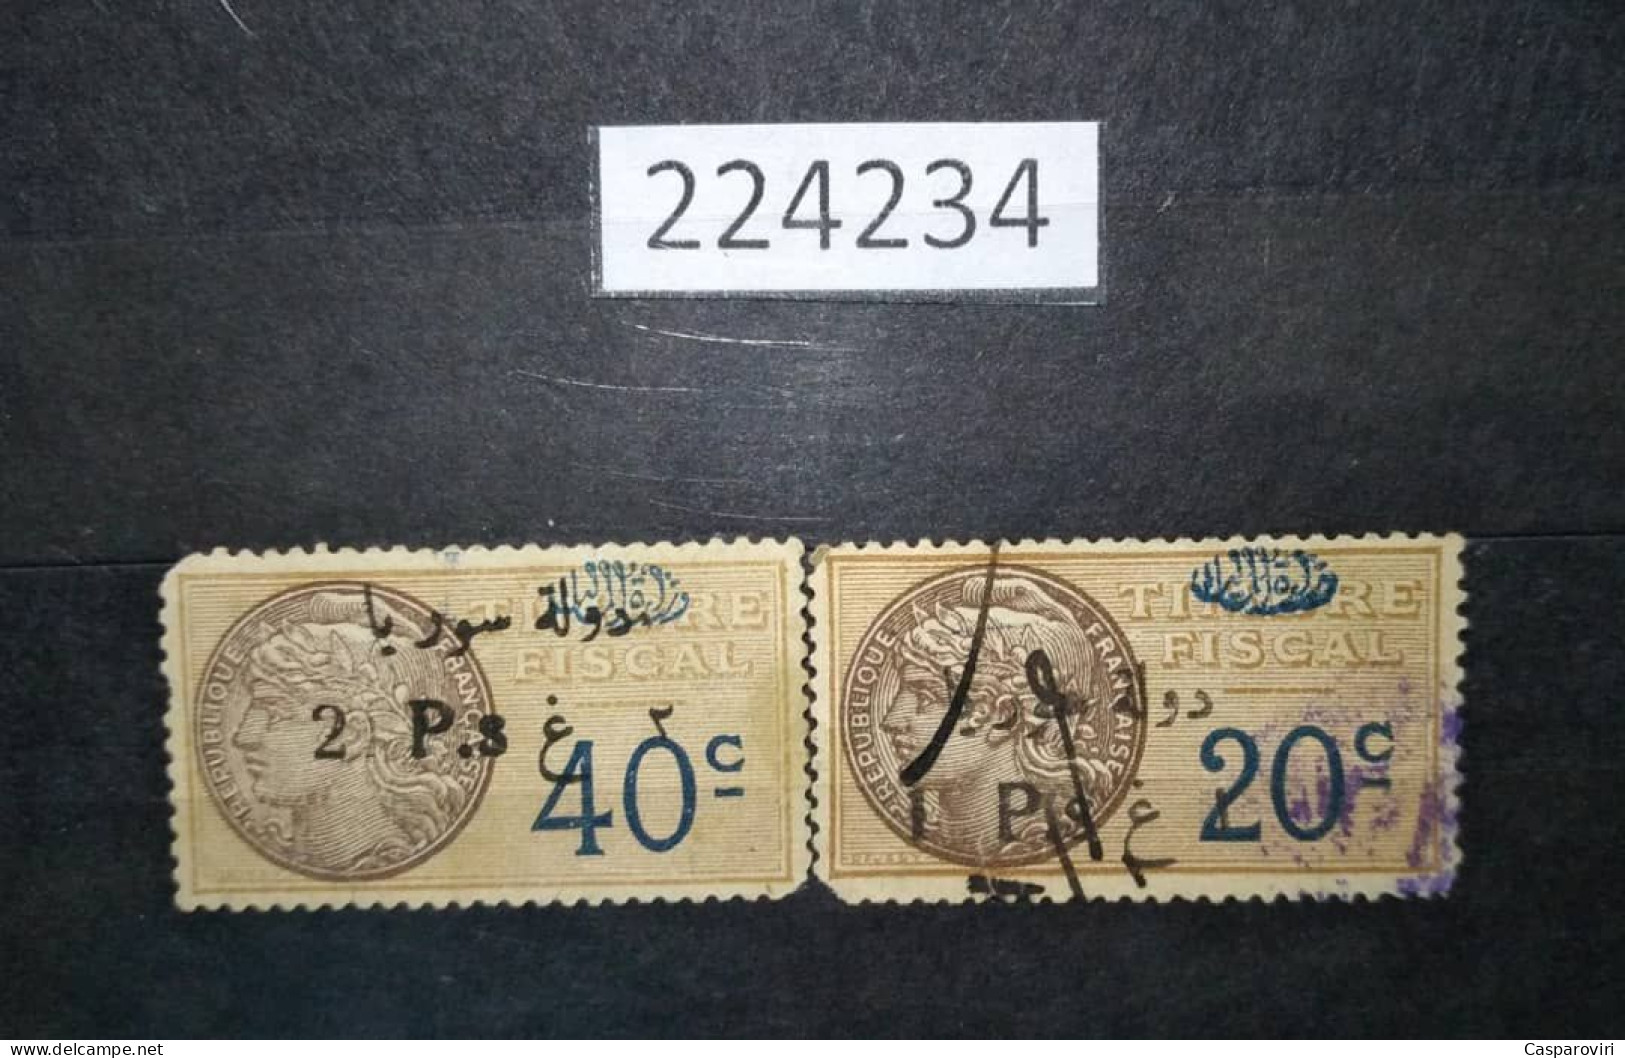 224234; French Colonies; Syria; 2 Revenue French Stamps 1P/20c, 2P/40c ;Ovpt. Etat De Syrie Et Ministère Des Finances - Oblitérés